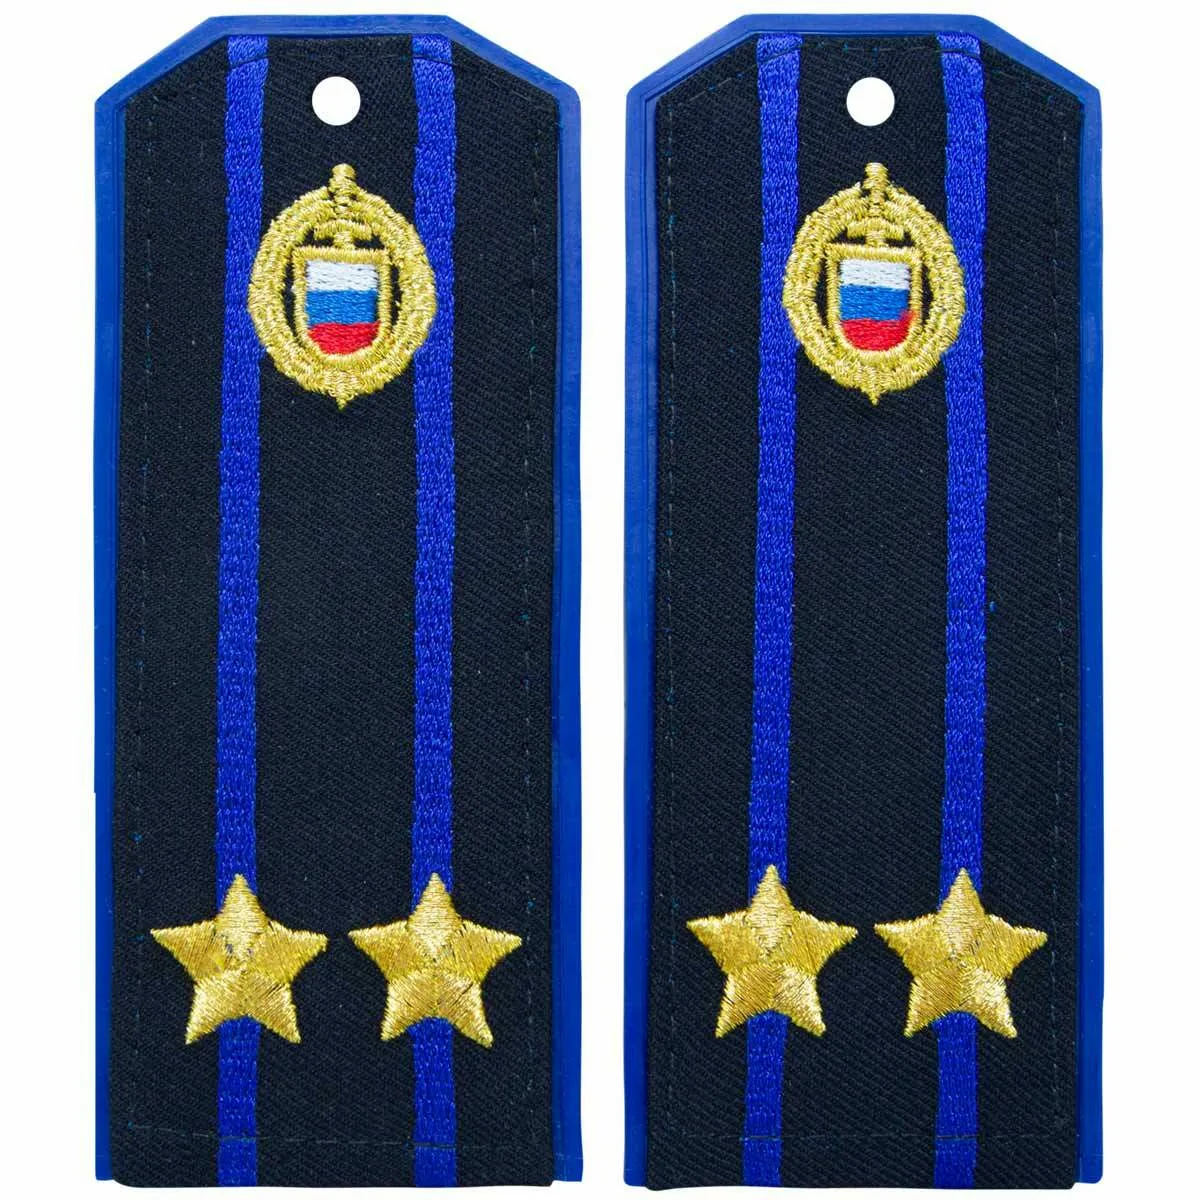 Фото Поздравления с Днем полиции сотруднику по званиям Младшему сержанту, Сержанту, Старшему сержанту, Старшине, Прапорщику #9